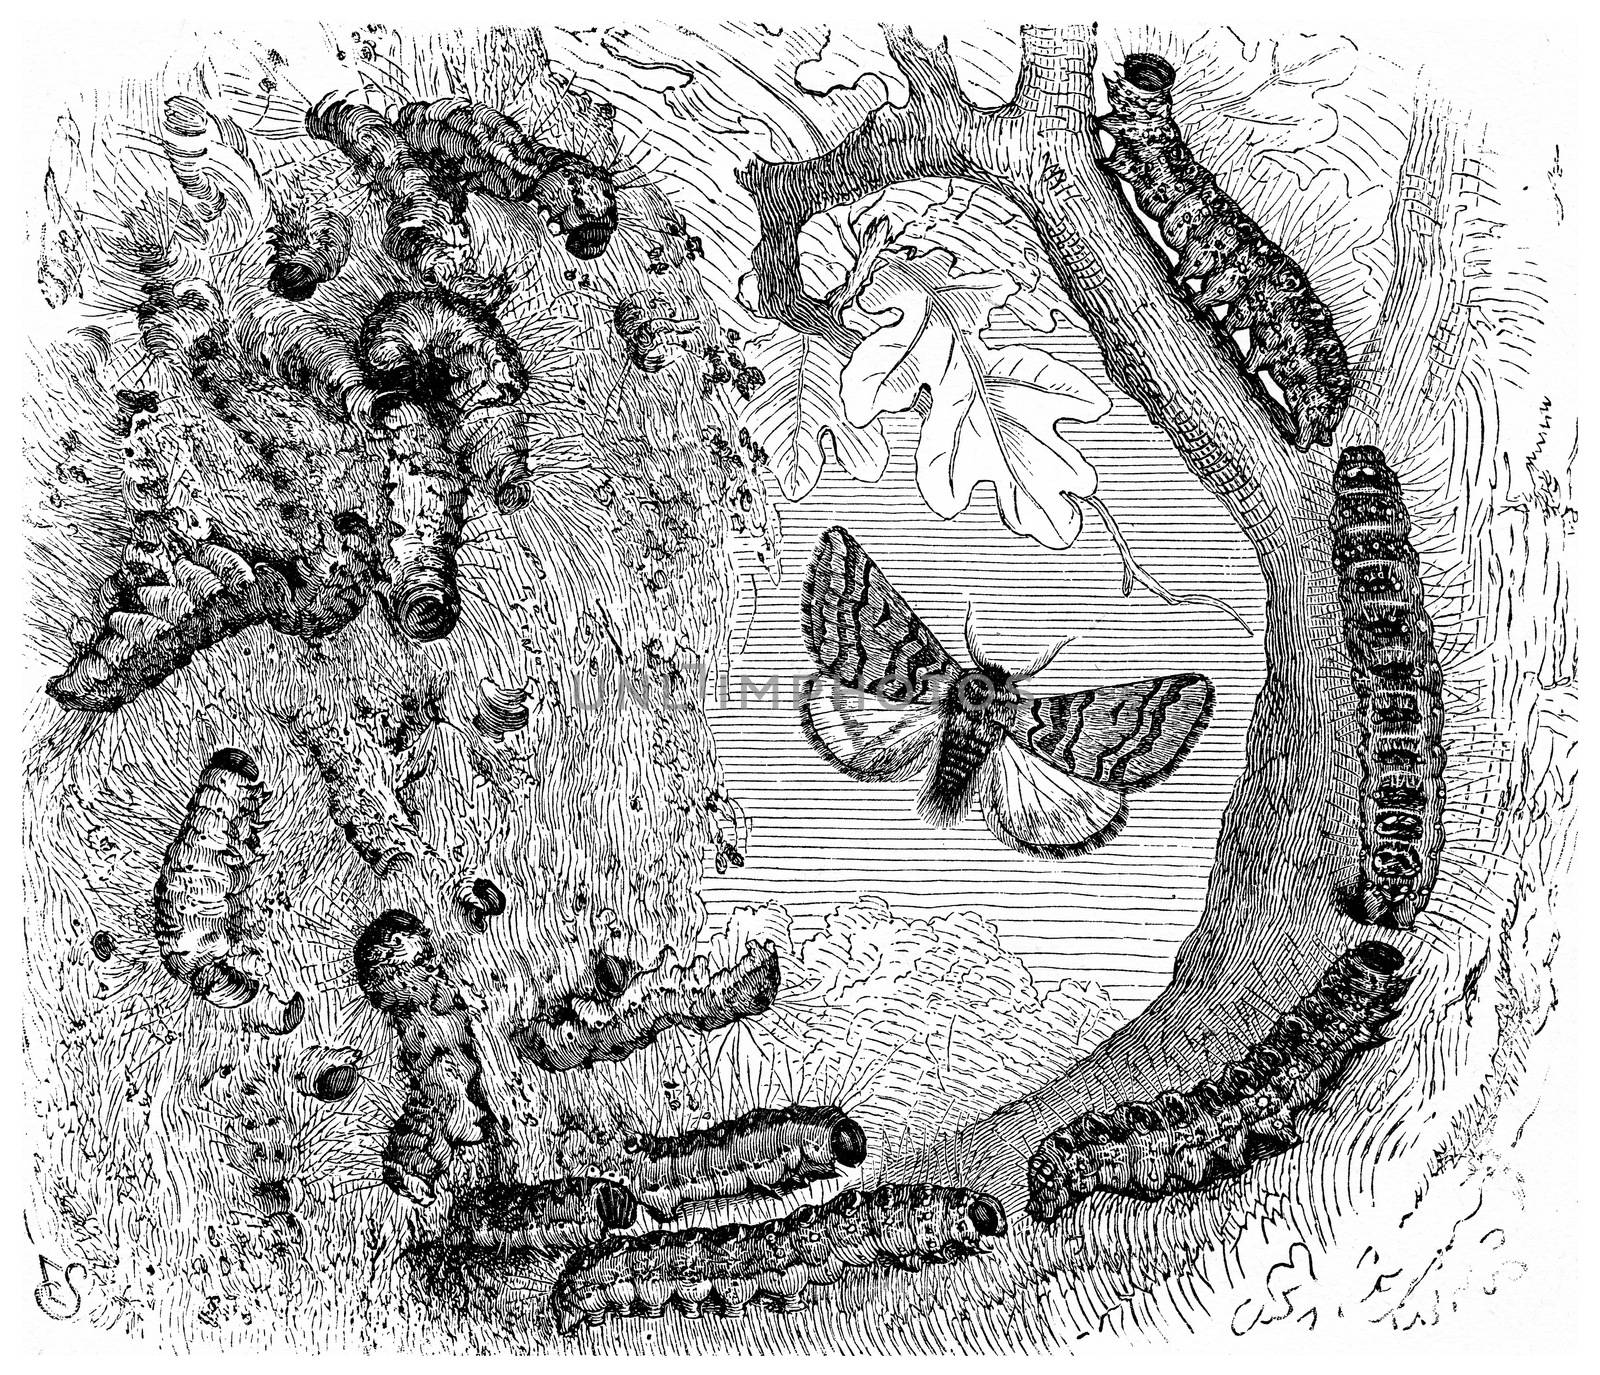 Armyworms, vintage engraved illustration. La Vie dans la nature, 1890.
